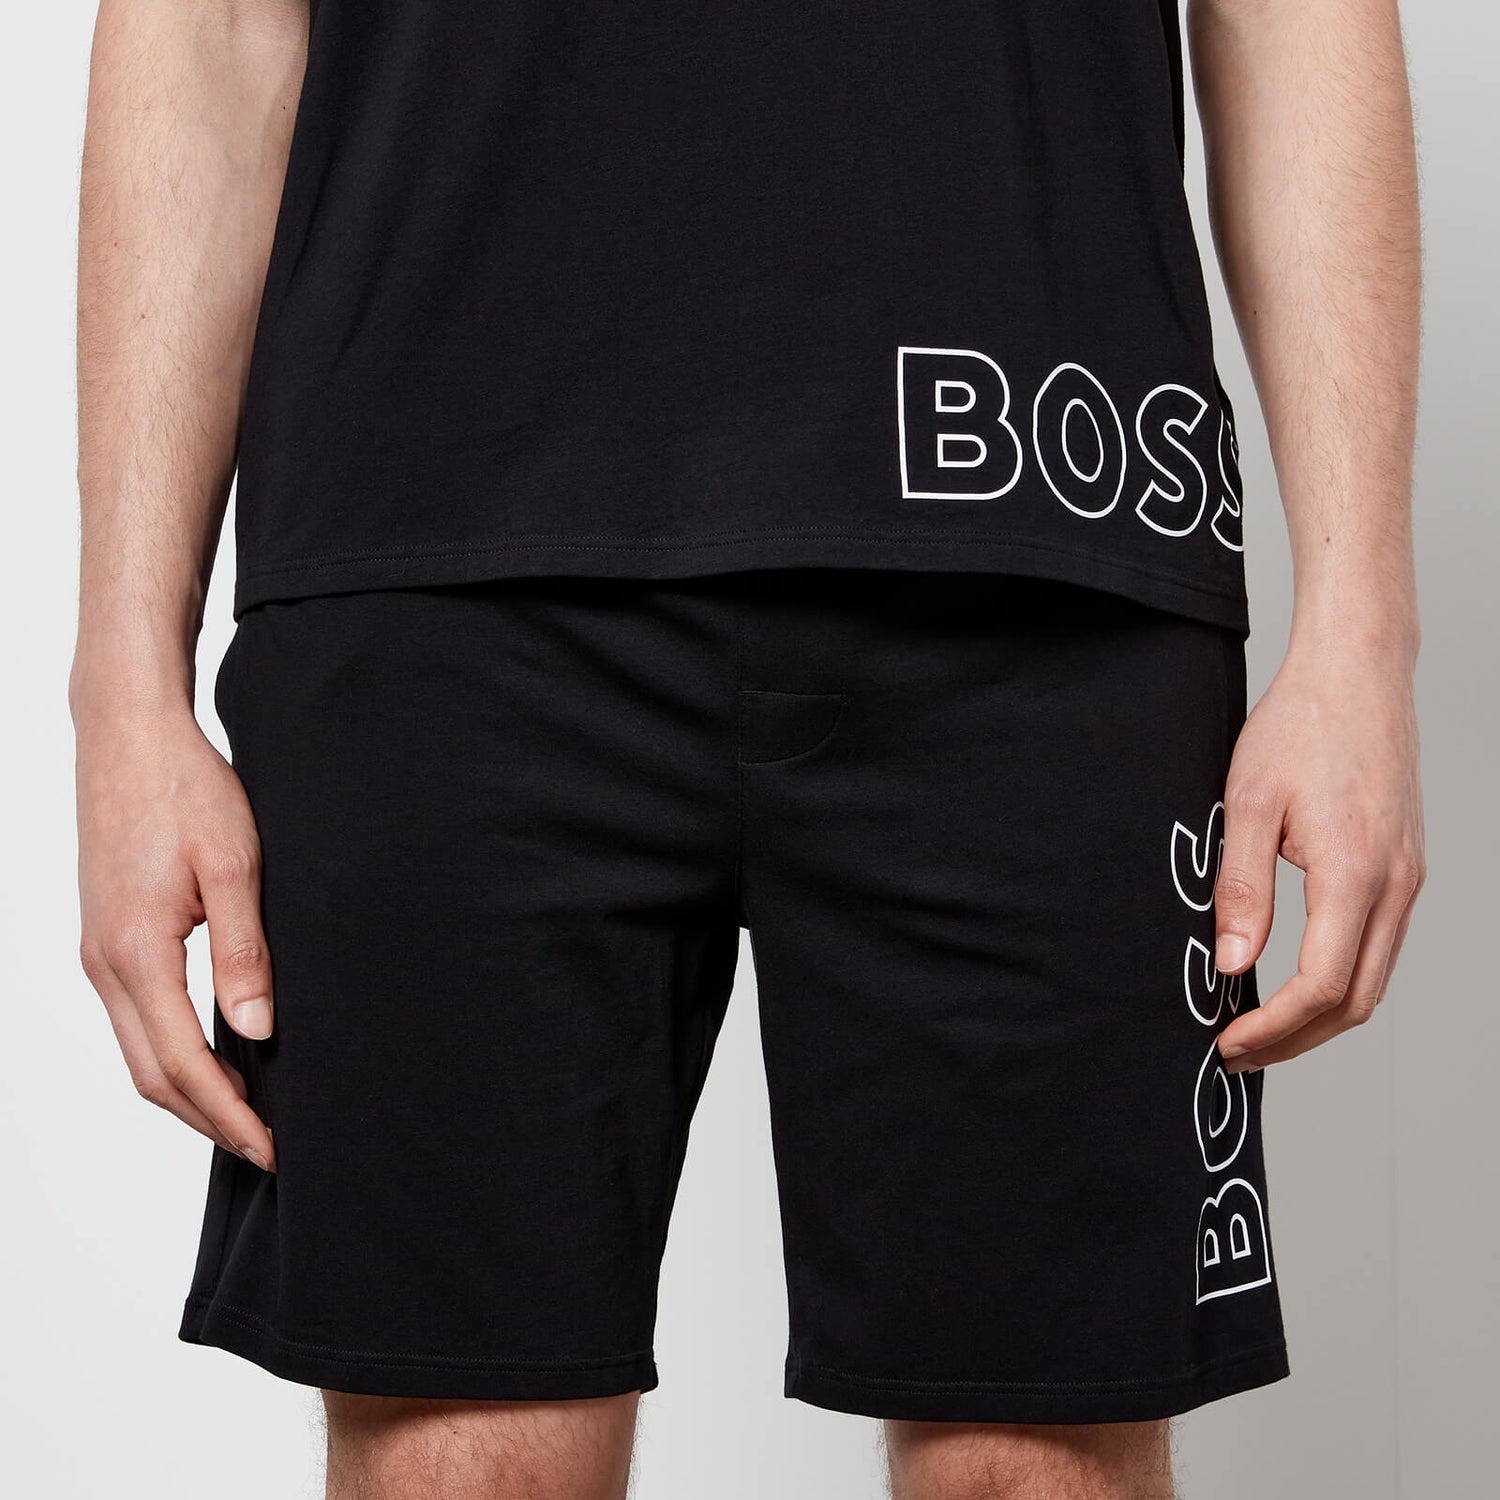 BOSS Bodywear Men's Identity Shorts - Black - S